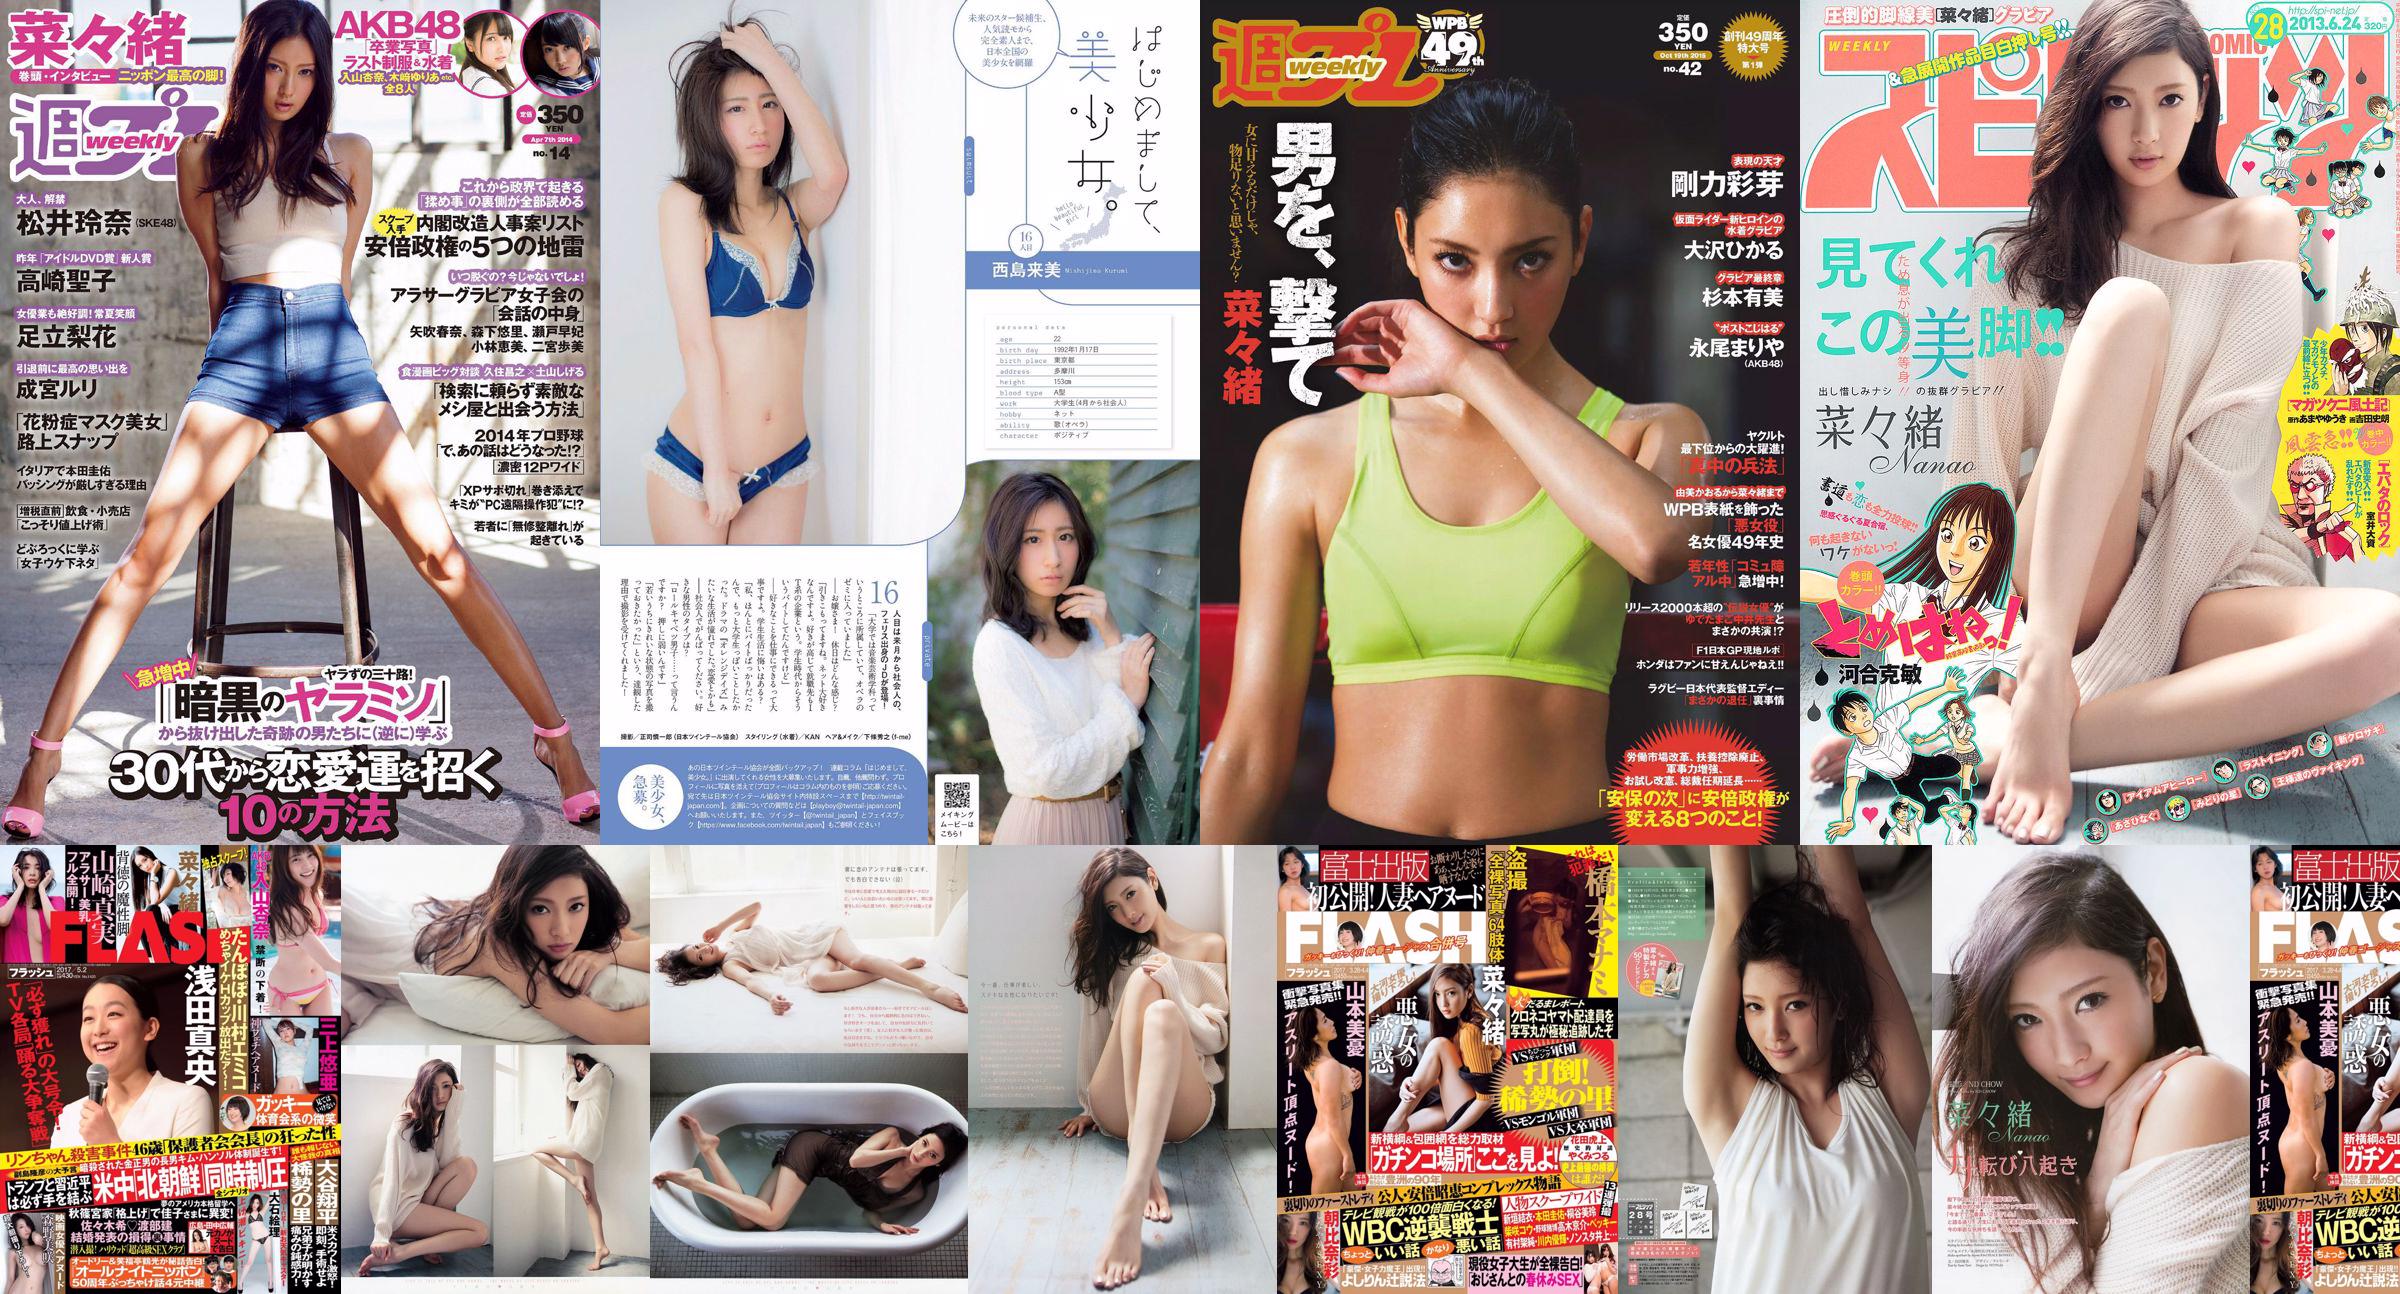 Nanao Rena Matsui Rika Adachi Natsuo Sawada Seiko Takasaki Nekomu Otogi Minami Kojima Ruri Narumiya [Weekly Playboy] 2014 No.14 Photo No.8efacd Page 4